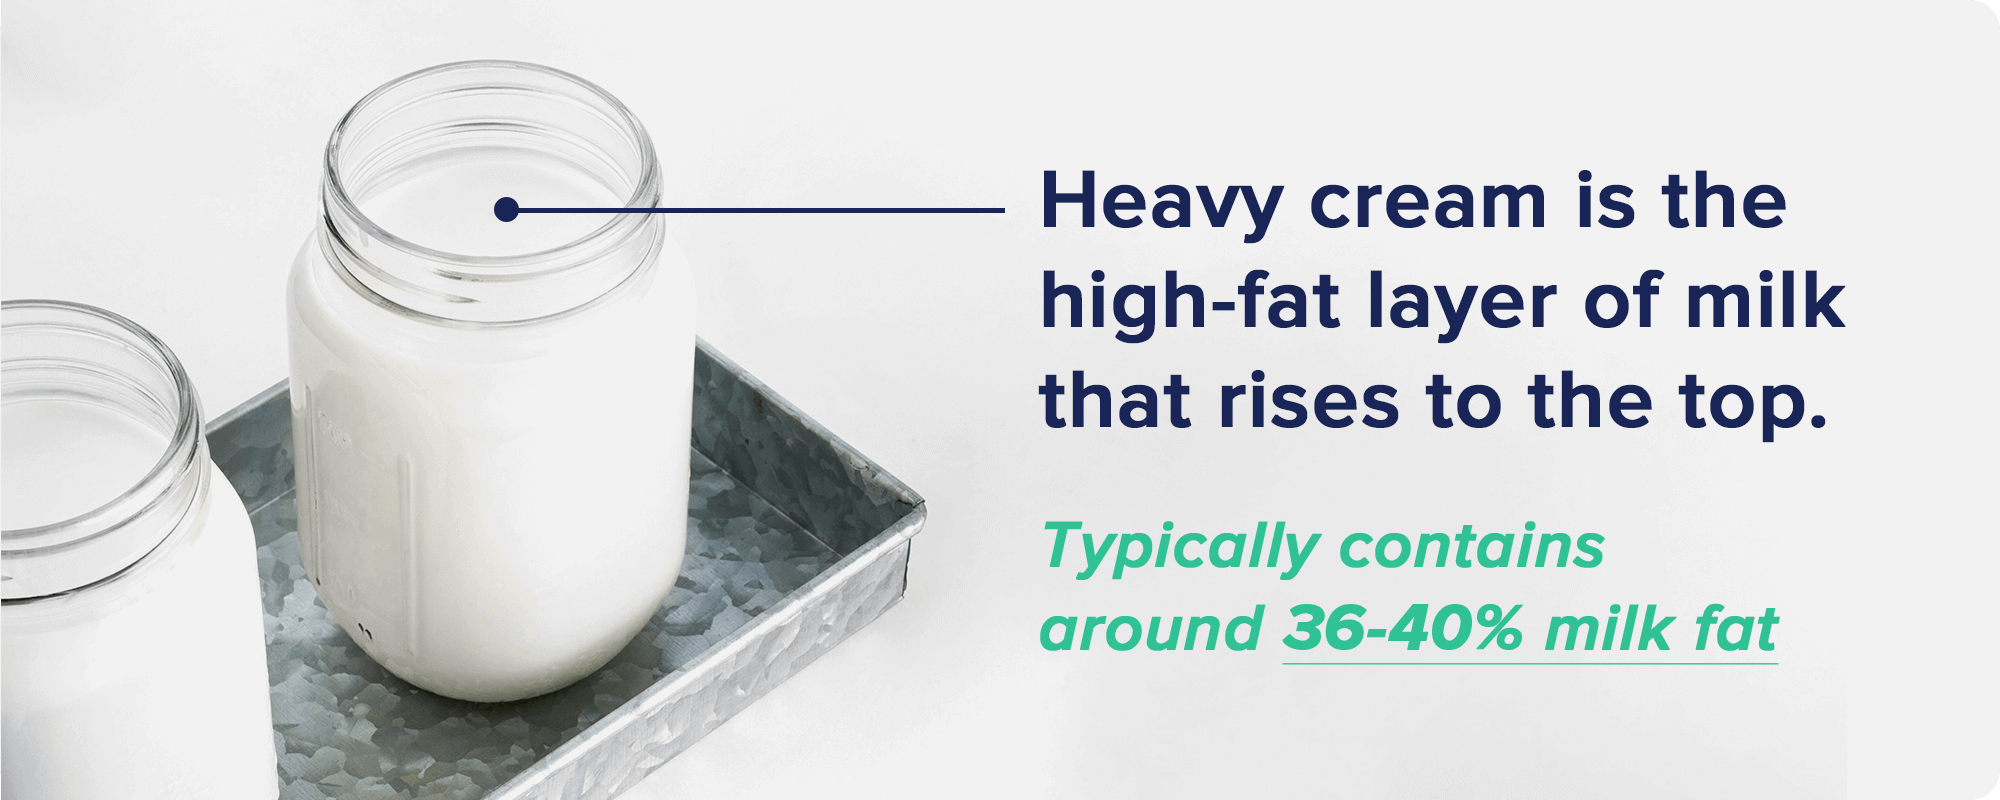 What Exactly Is Heavy Cream?